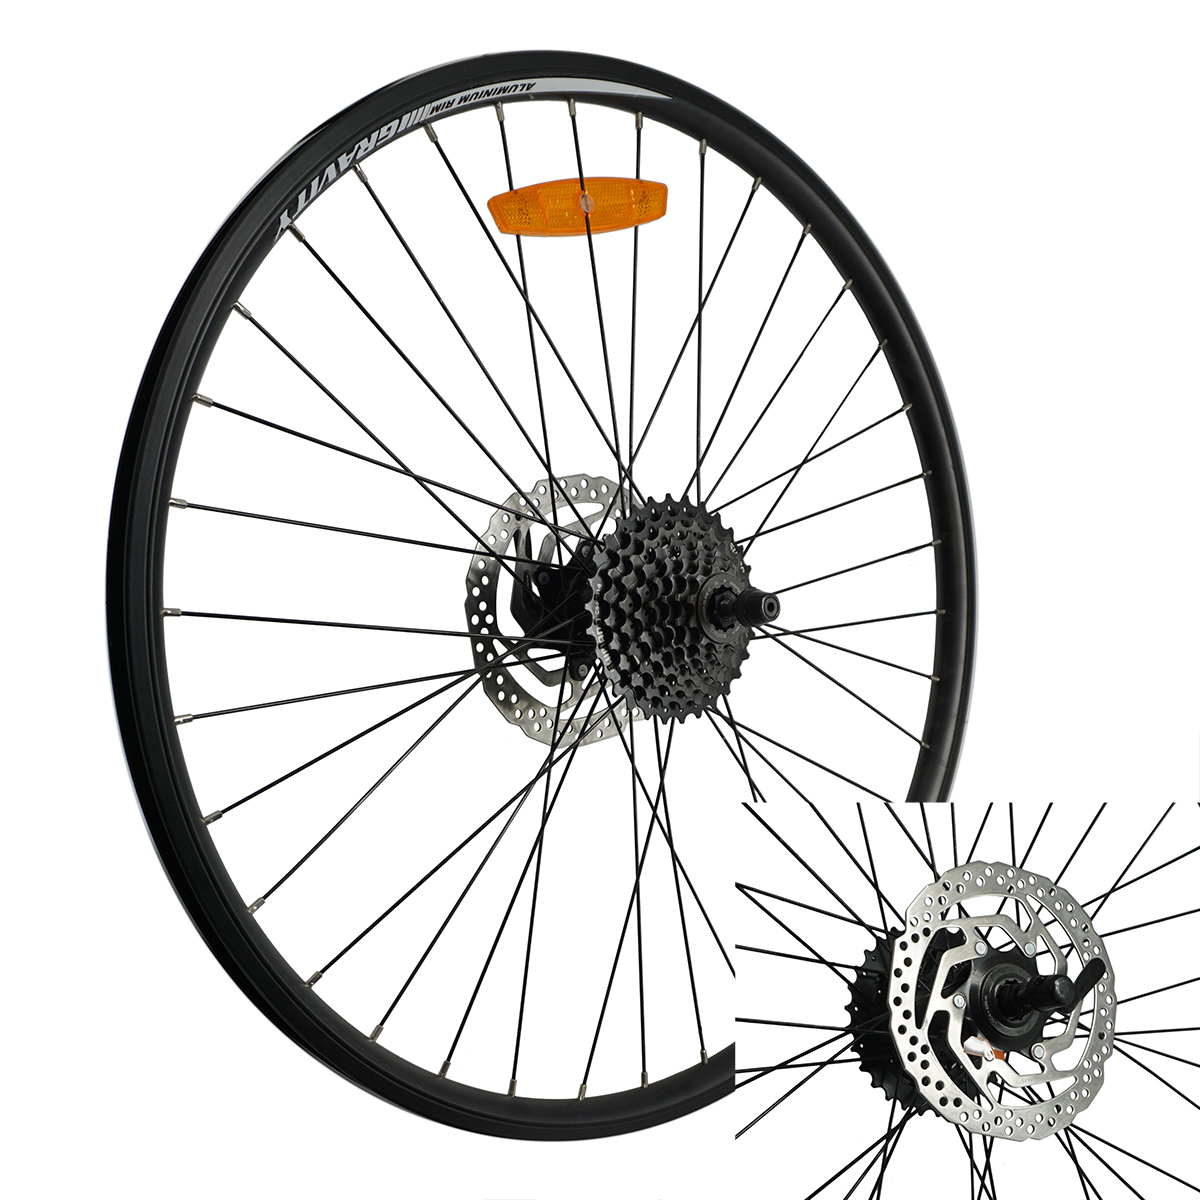 Тормозной диск на колесе велосипеда. Заднее колесо на велосипед 26 дюймов 7 скоростей. Заднее колесо 26 с трещеткой. Колесо заднее 36 спиц 26 дюймов.